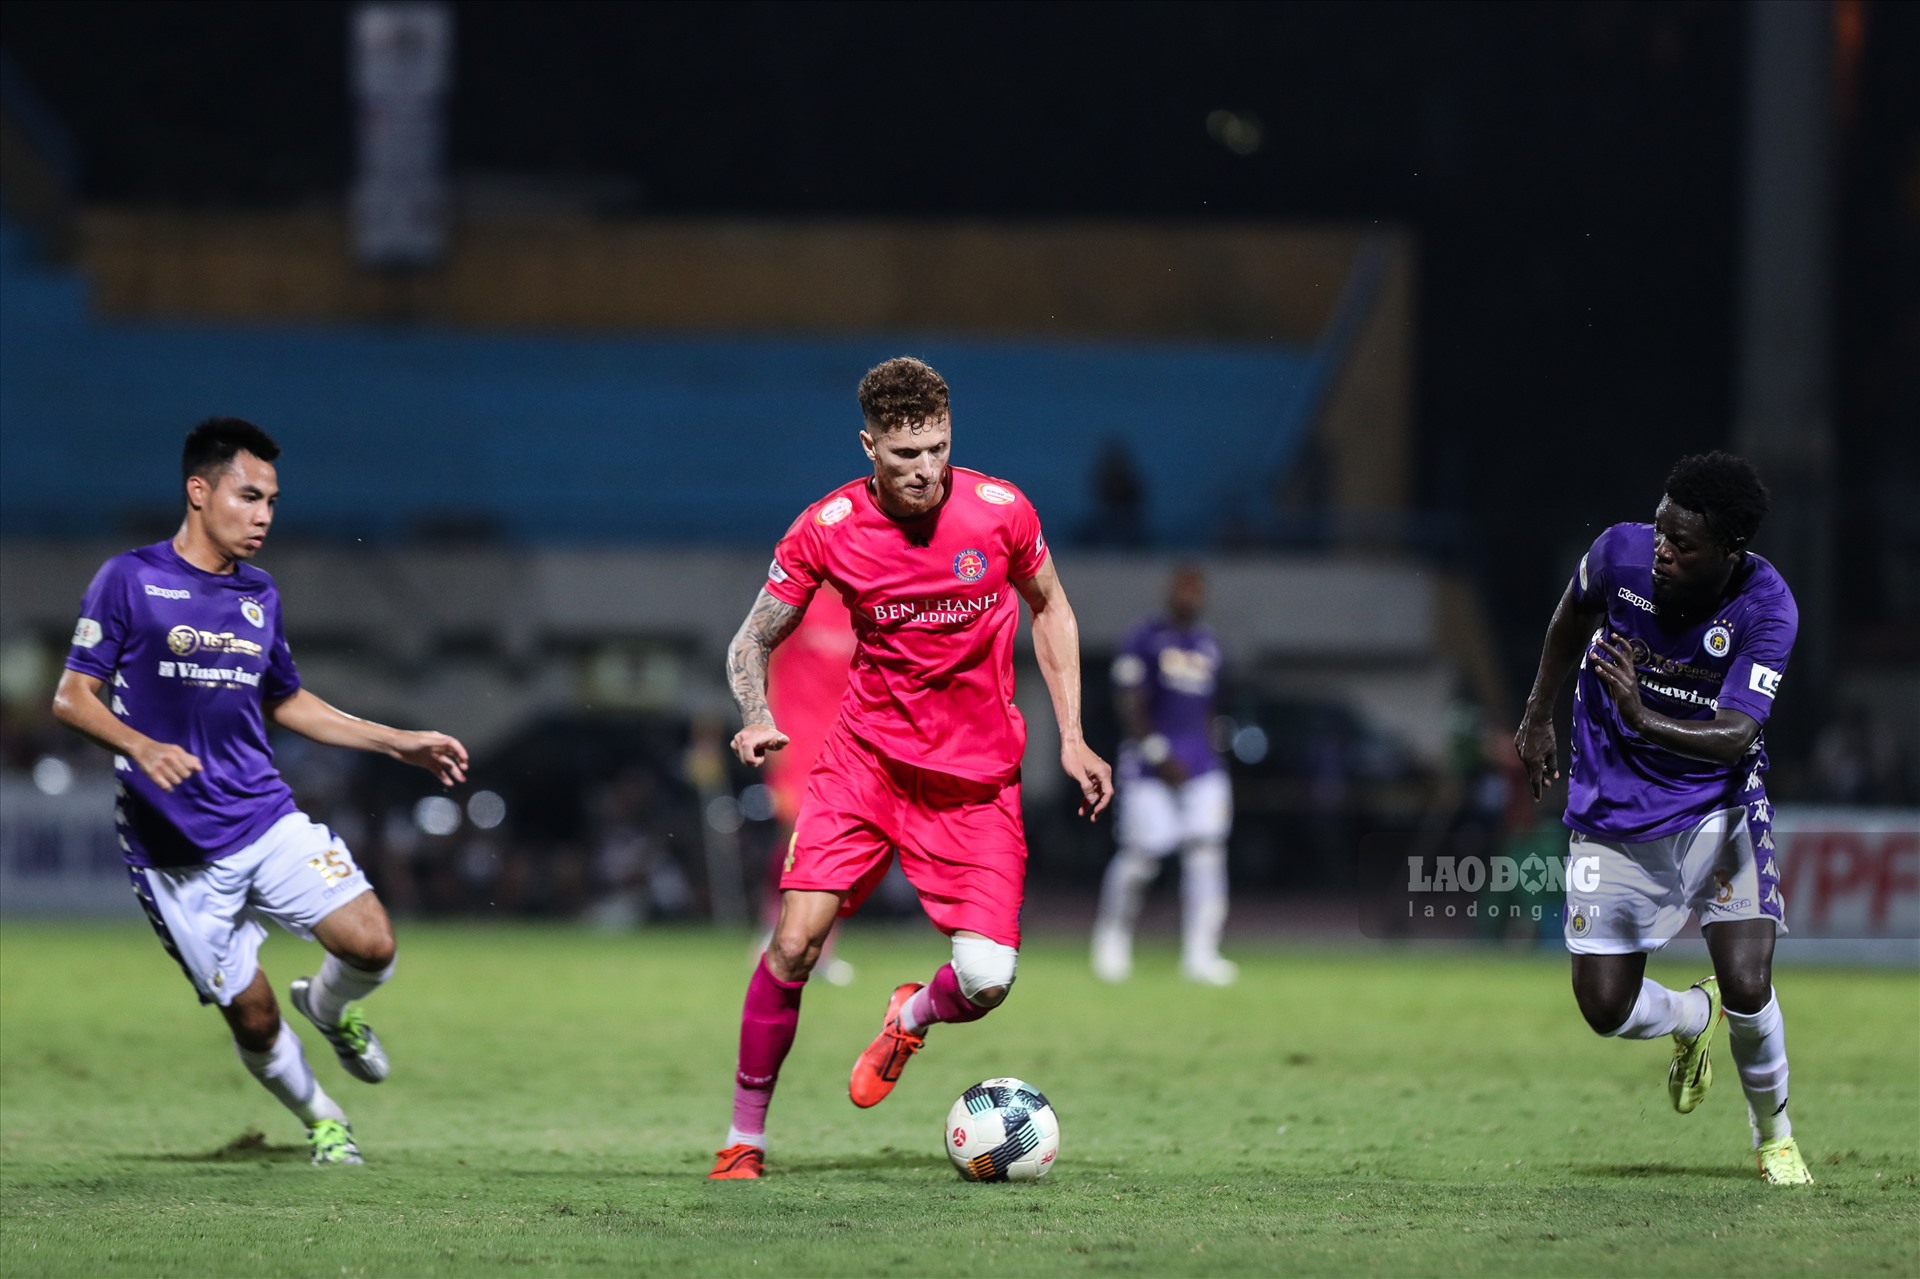 Geovane Magno gia nhập Sài Gòn FC cách đây tròn 1 năm (ngày 29.6.2019) để thay suất ngoại binh của Dominique da Sylva đã rời đi trước đó.